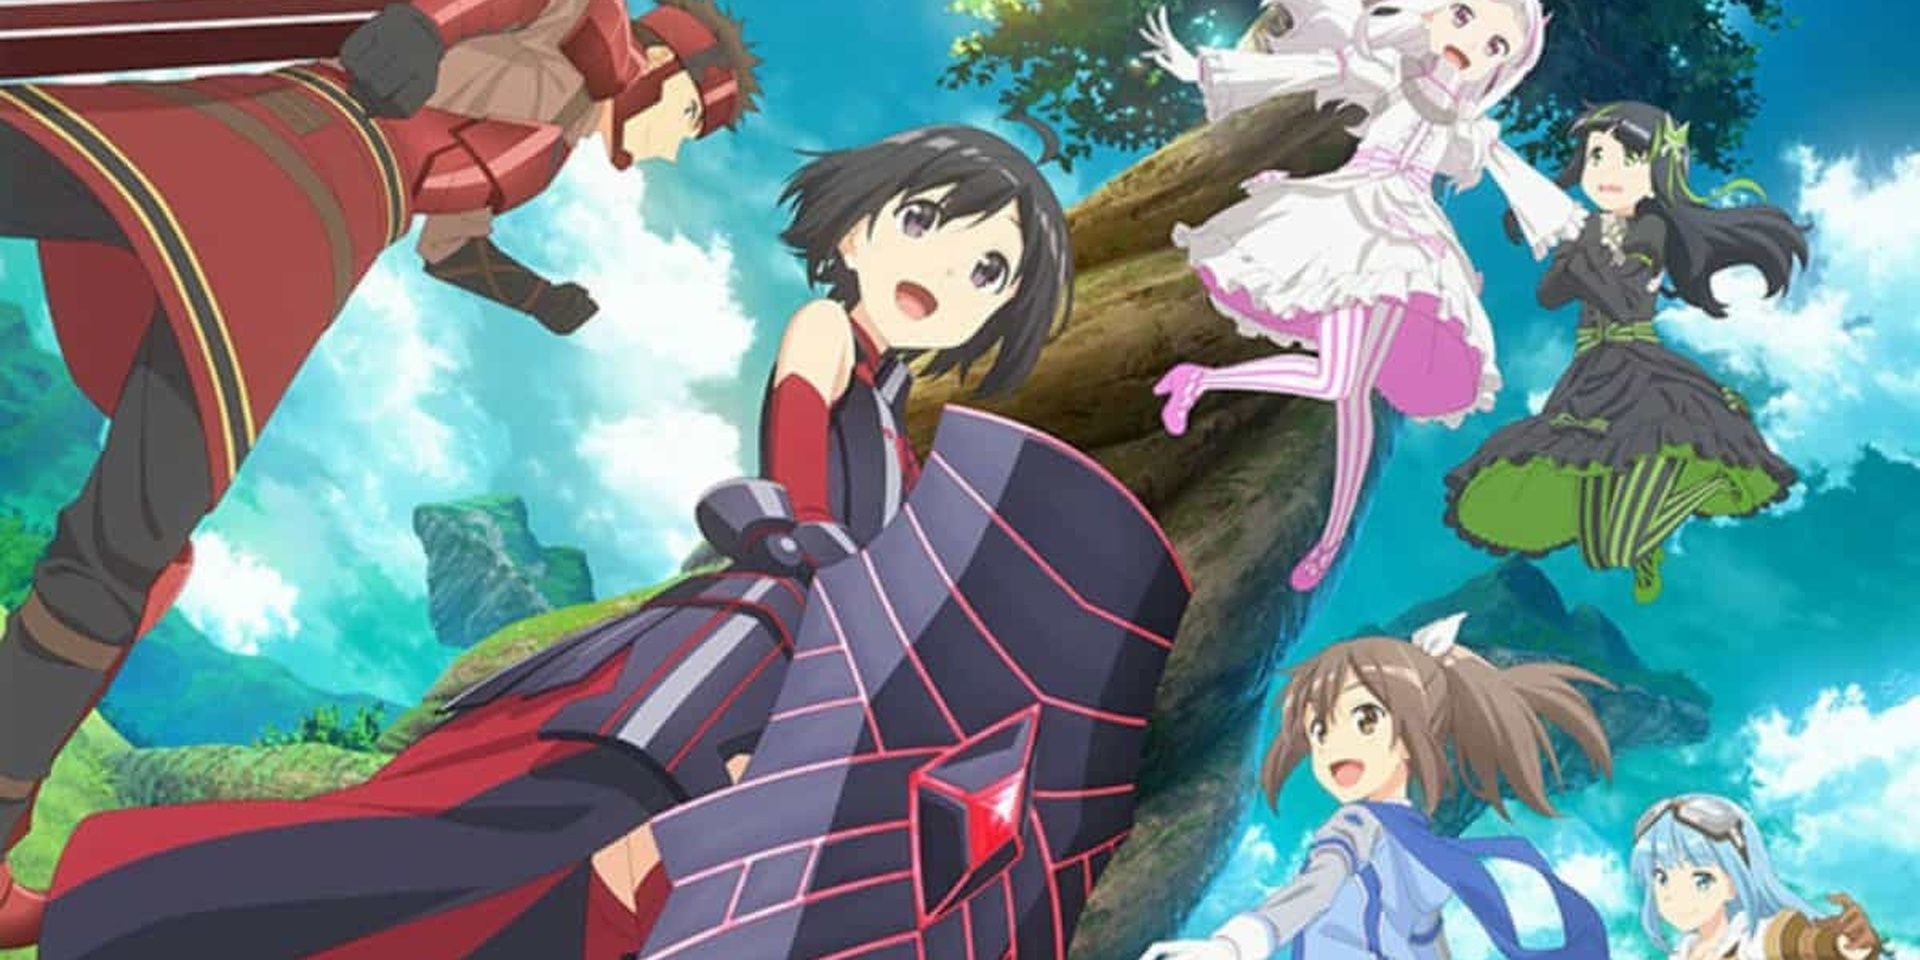 Imagem da capa do Bofuri com todos os personagens principais